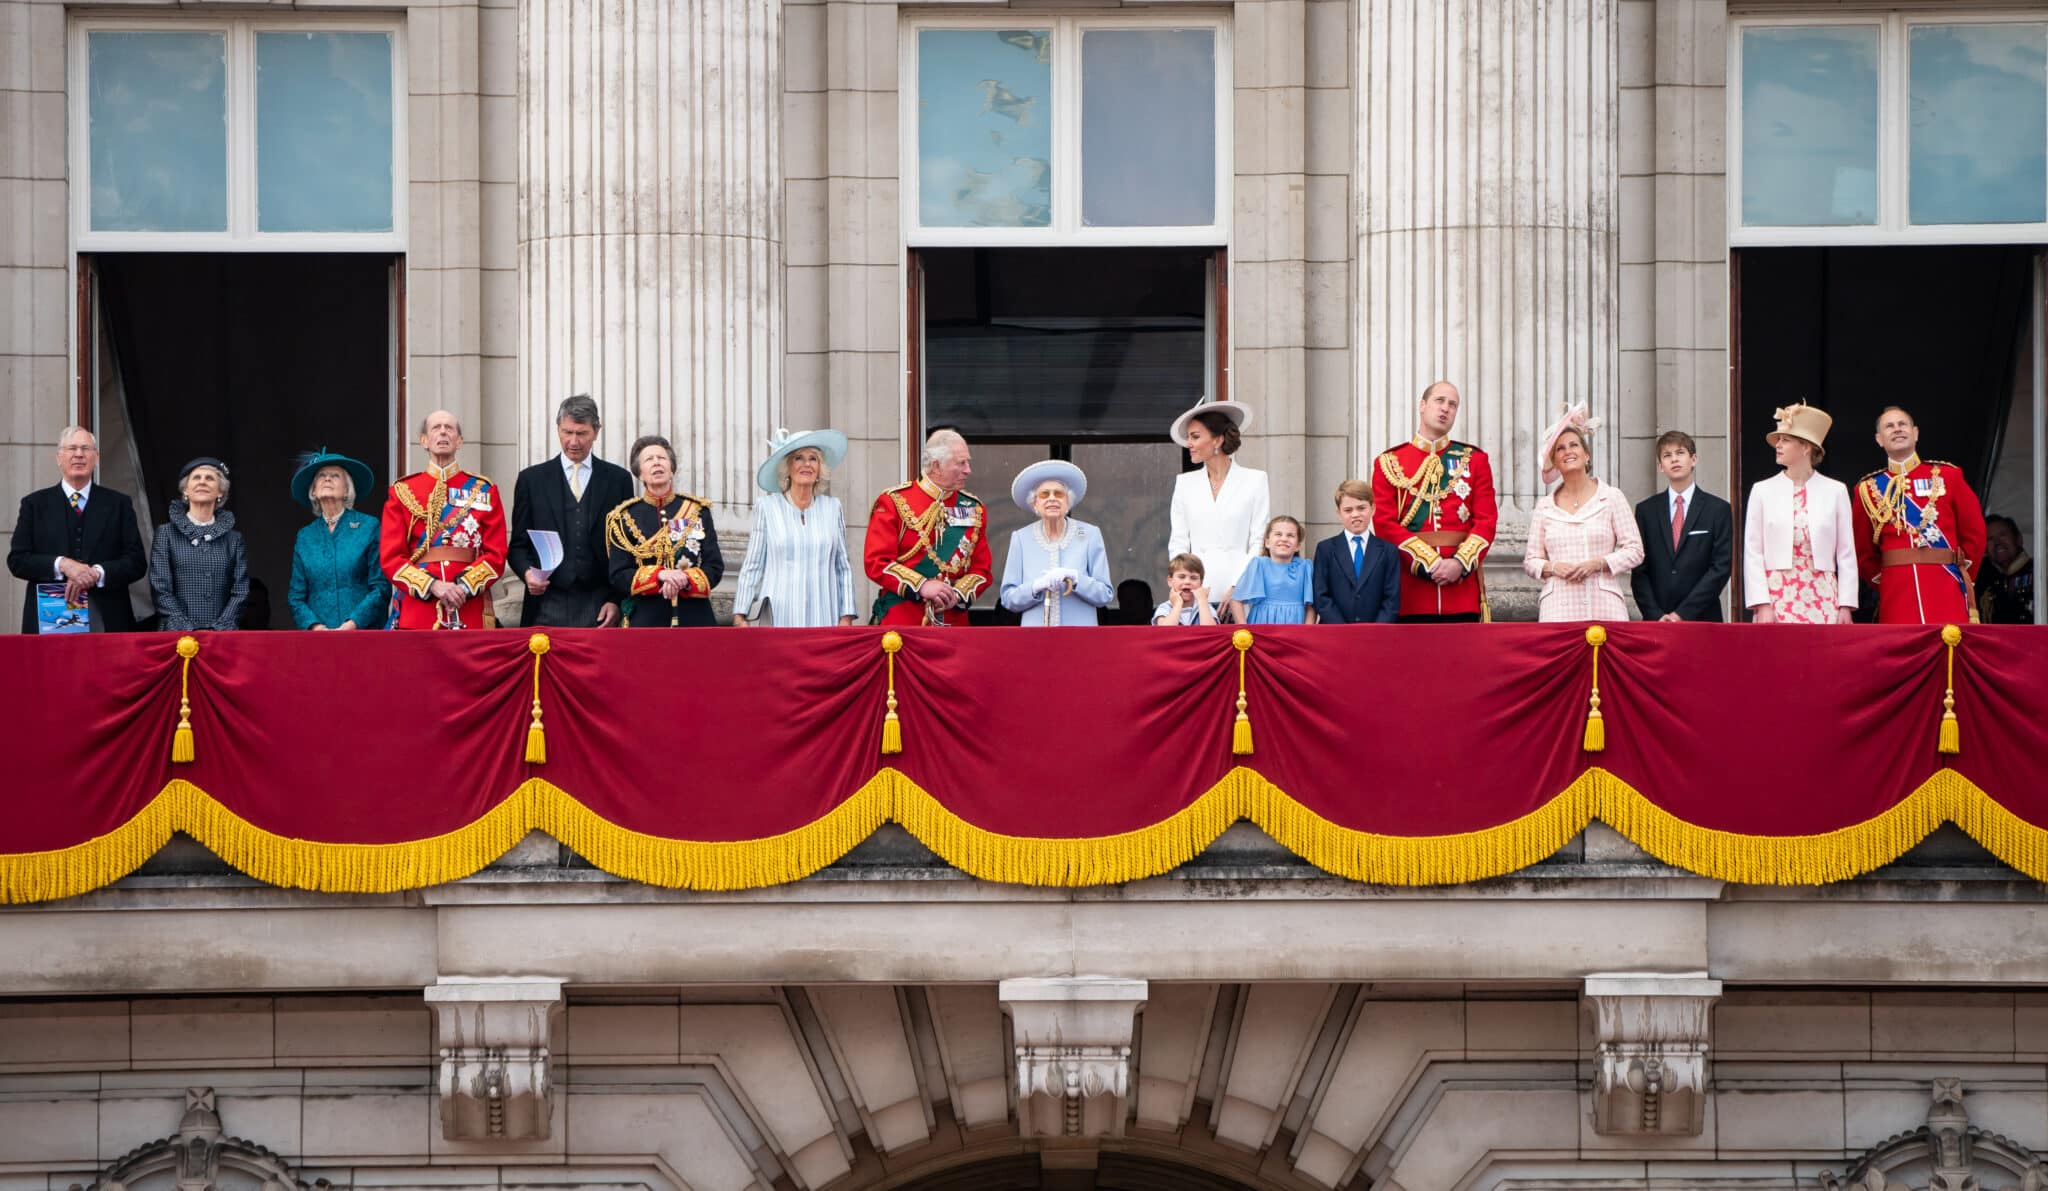 La reina Isabel II en el balcón, rodeada de su familia, en el día de su Jubileo Platino, cuando cumple 70 años en el trono de Inglaterra